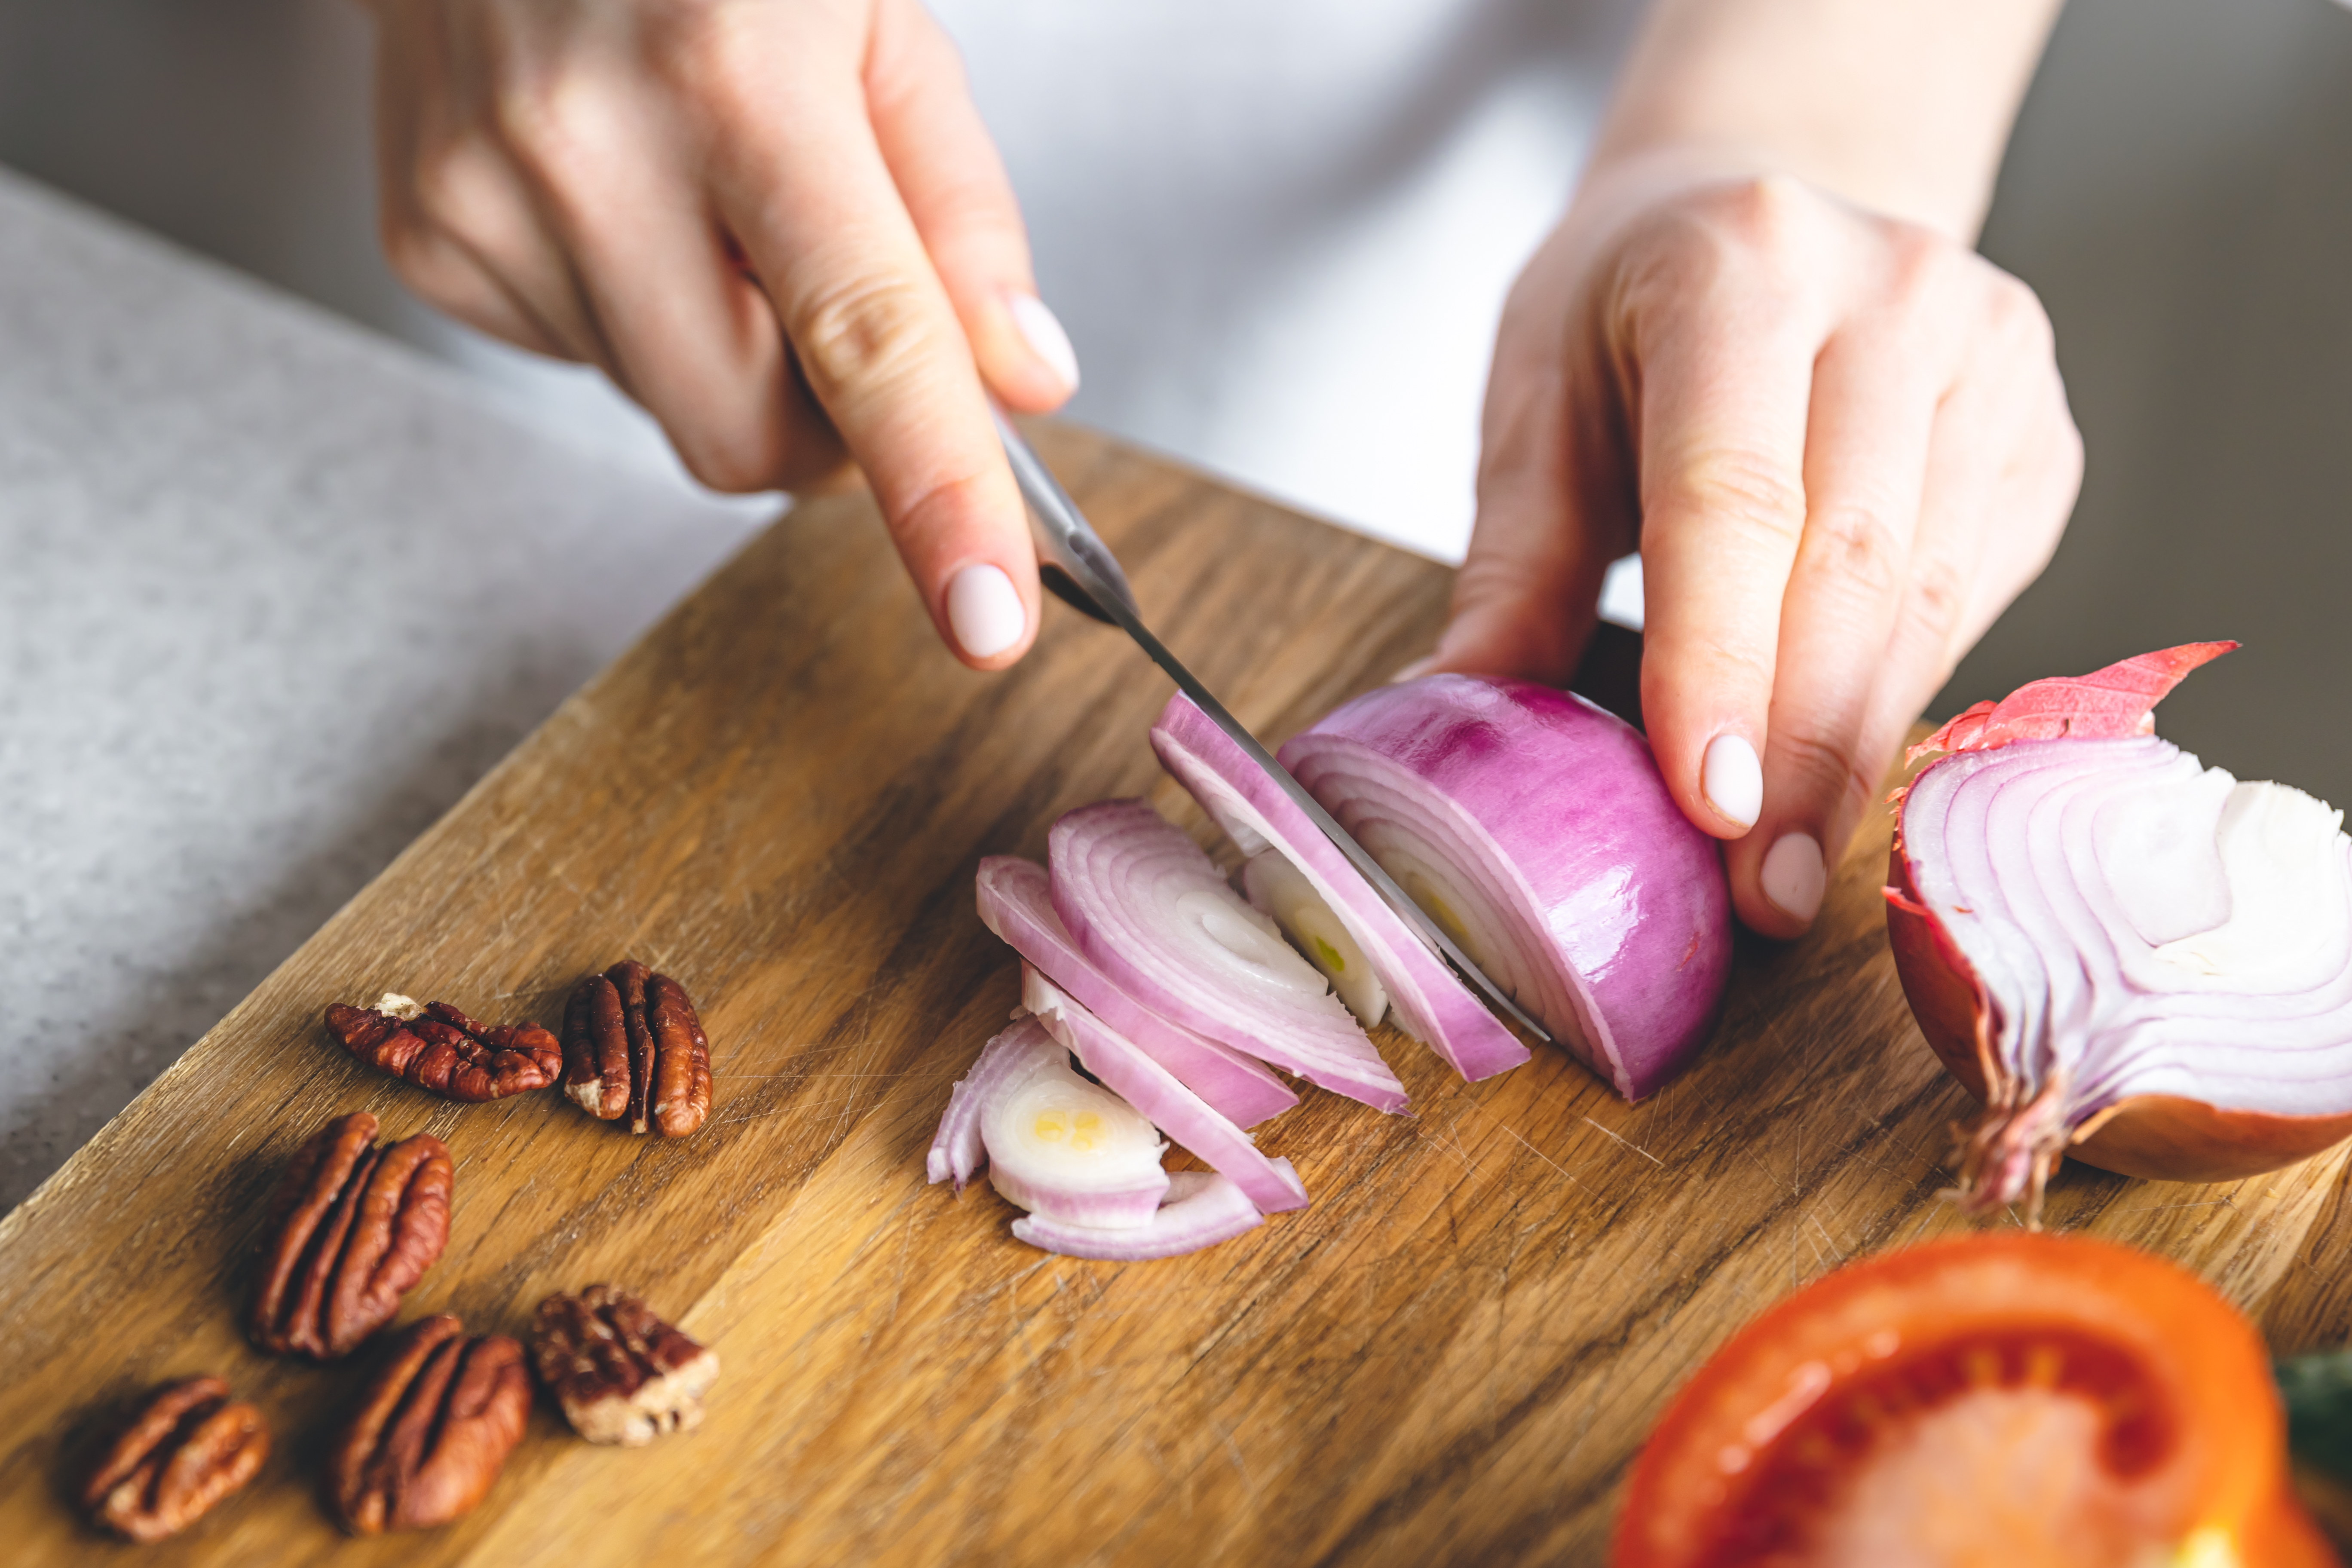 cutting onion